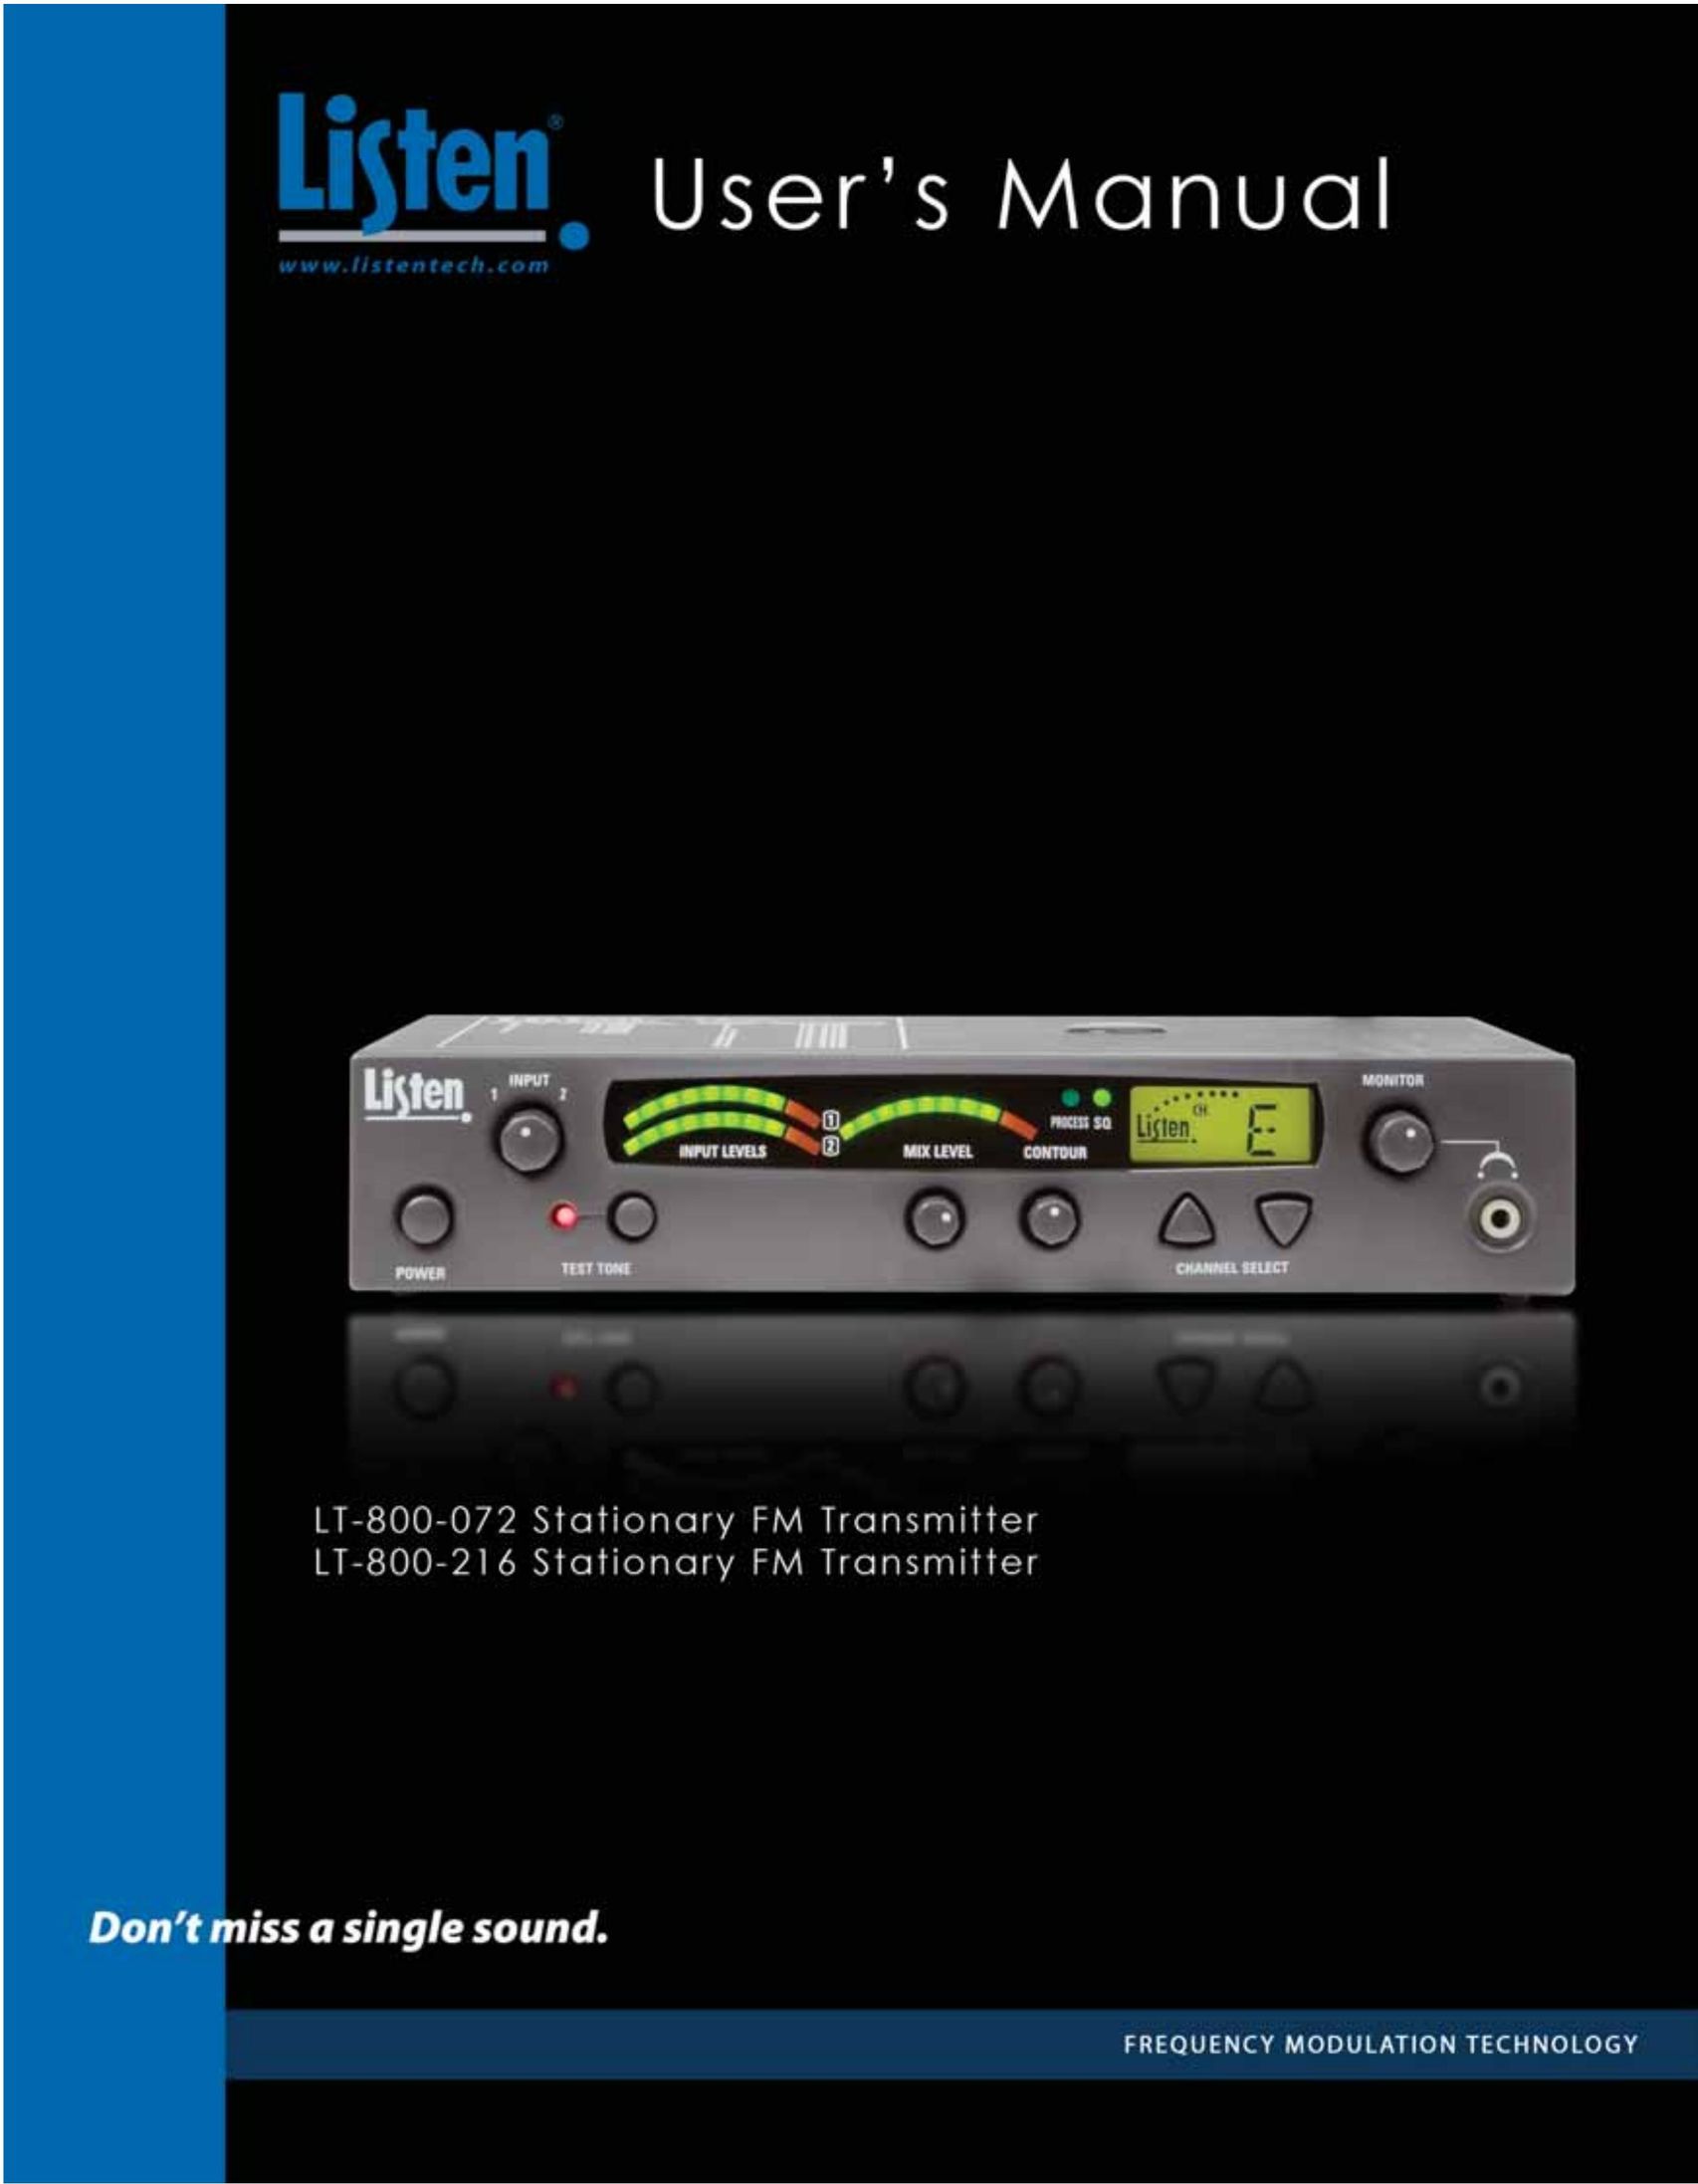 Listen Technologies LT-800-216 Stereo System User Manual